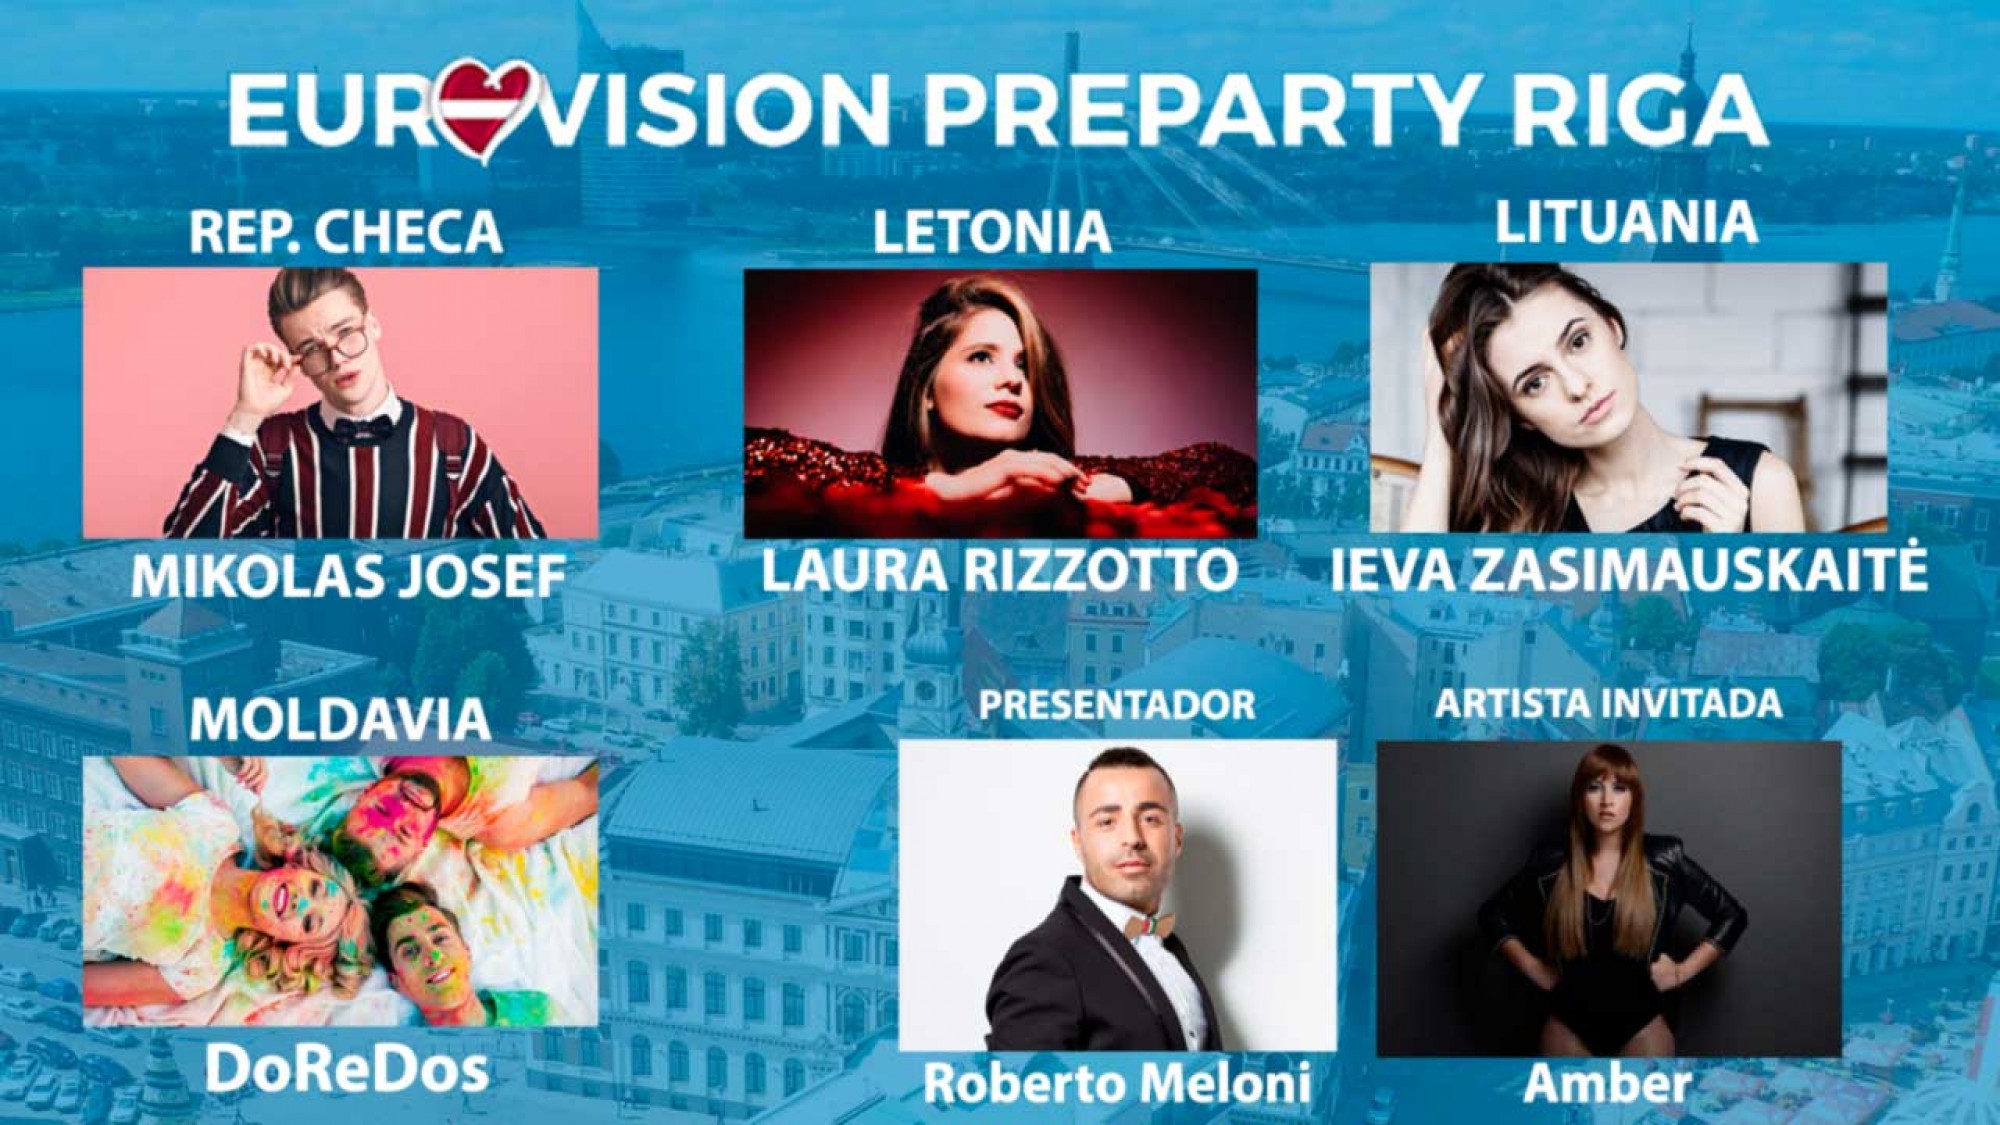 Οι εμφανίσεις των συμμετεχόντων στο Eurovision pre-party στη Ρίγα